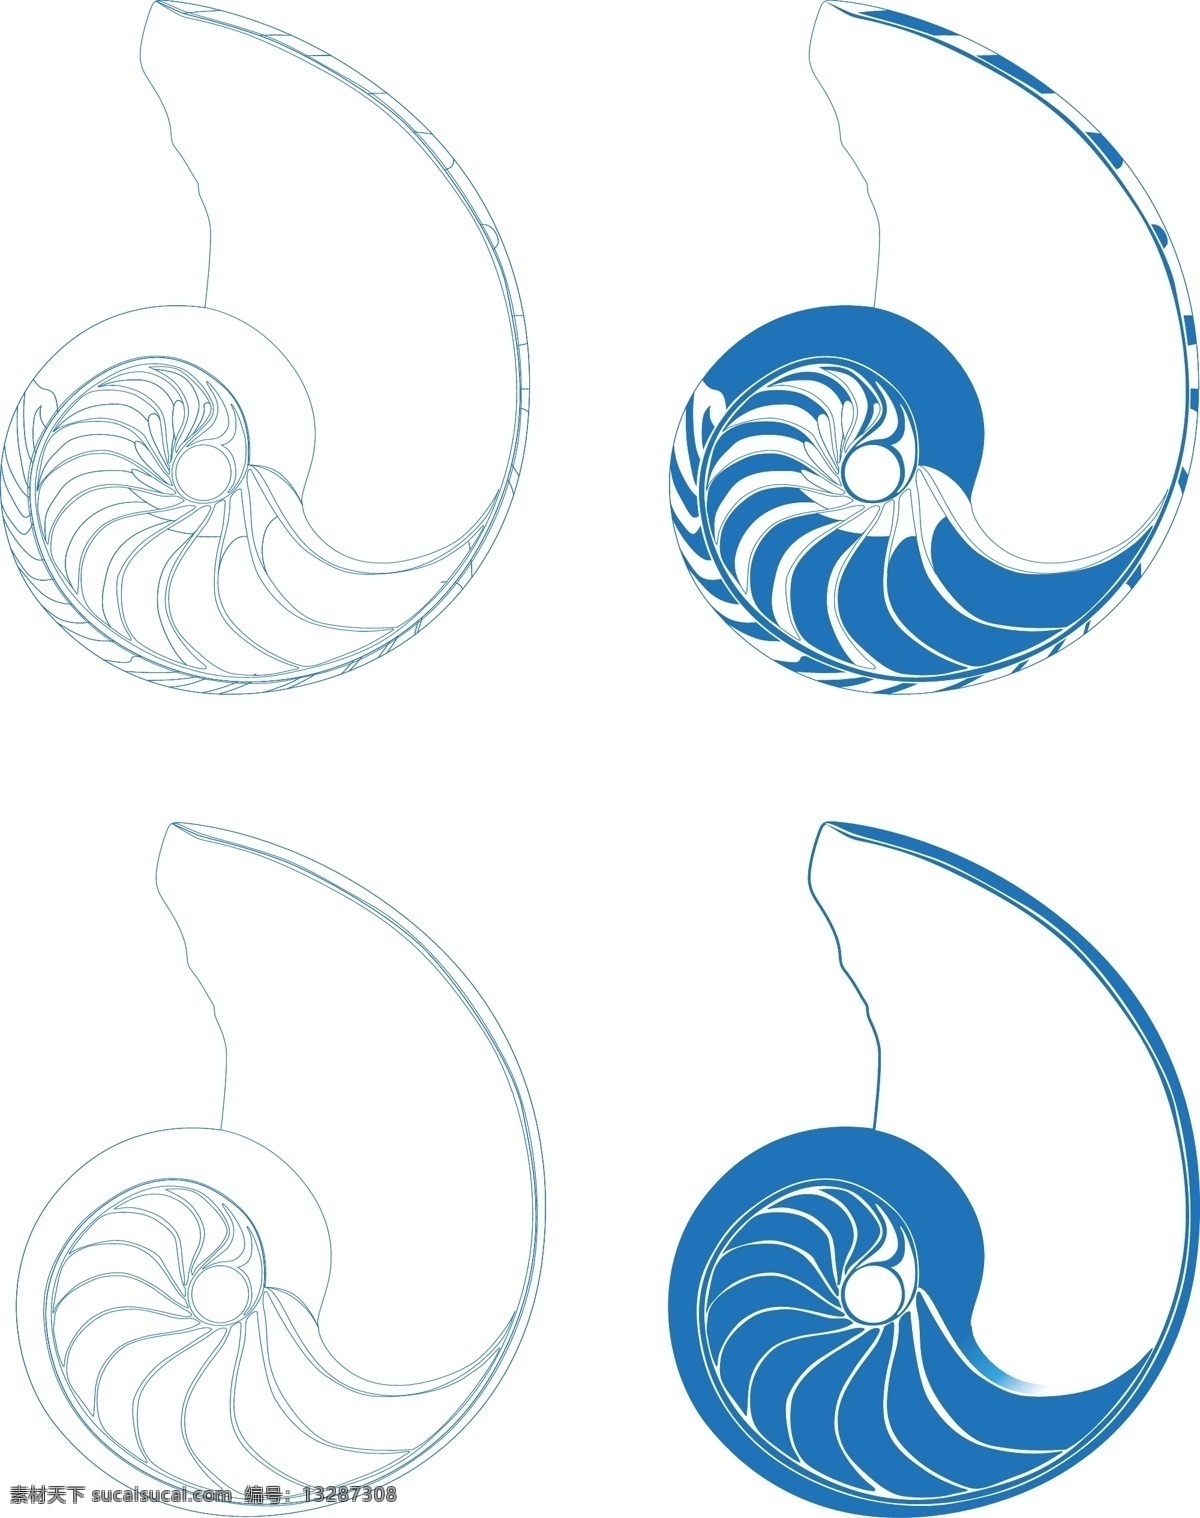 海螺剖面图 海螺 鹦鹉螺 剖面图 矢量 原创 海洋生物 生物世界